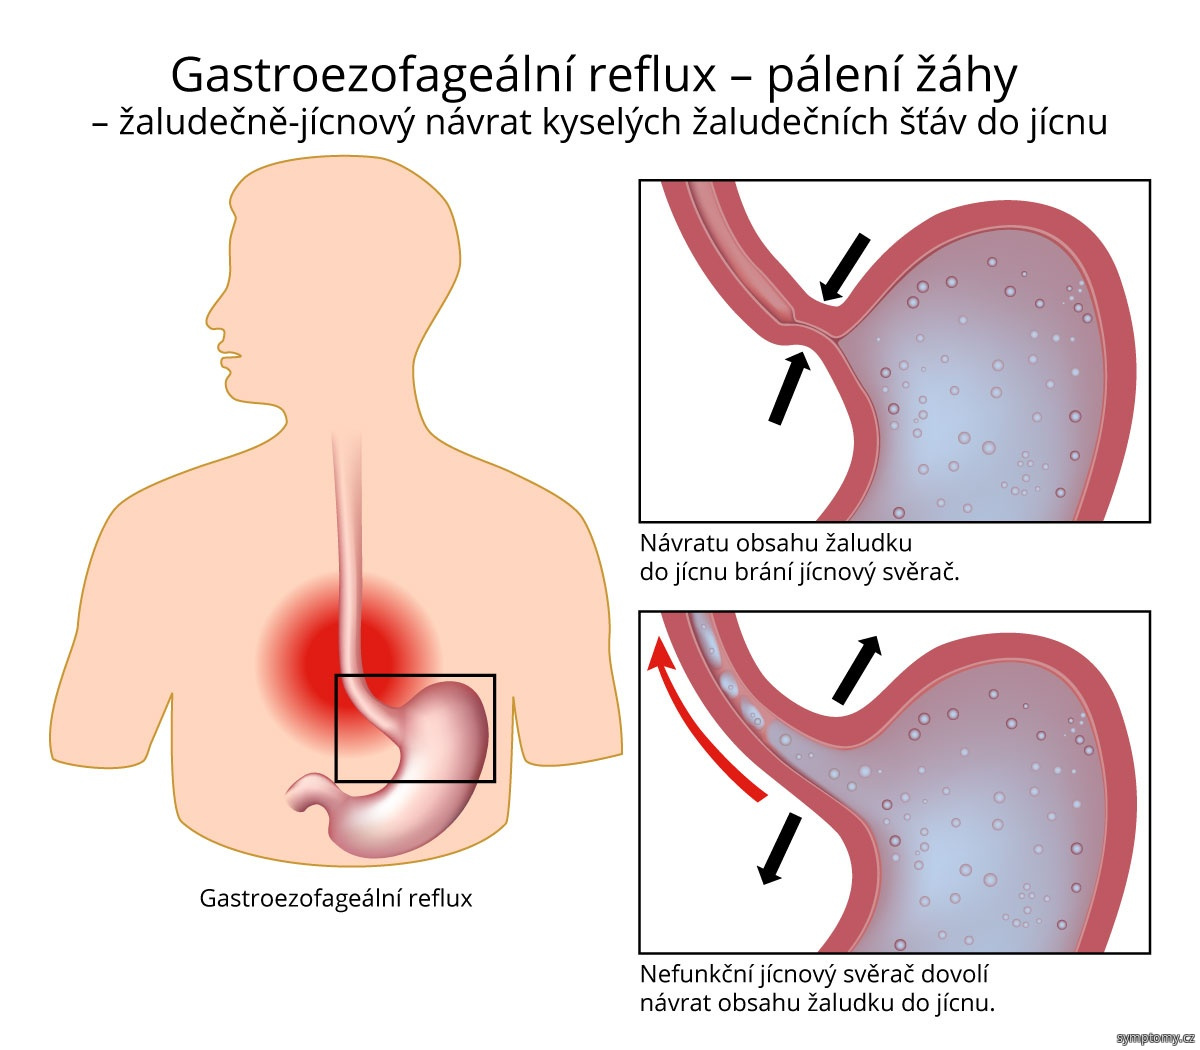 Gastroezofageální reflux - pálení žáhy